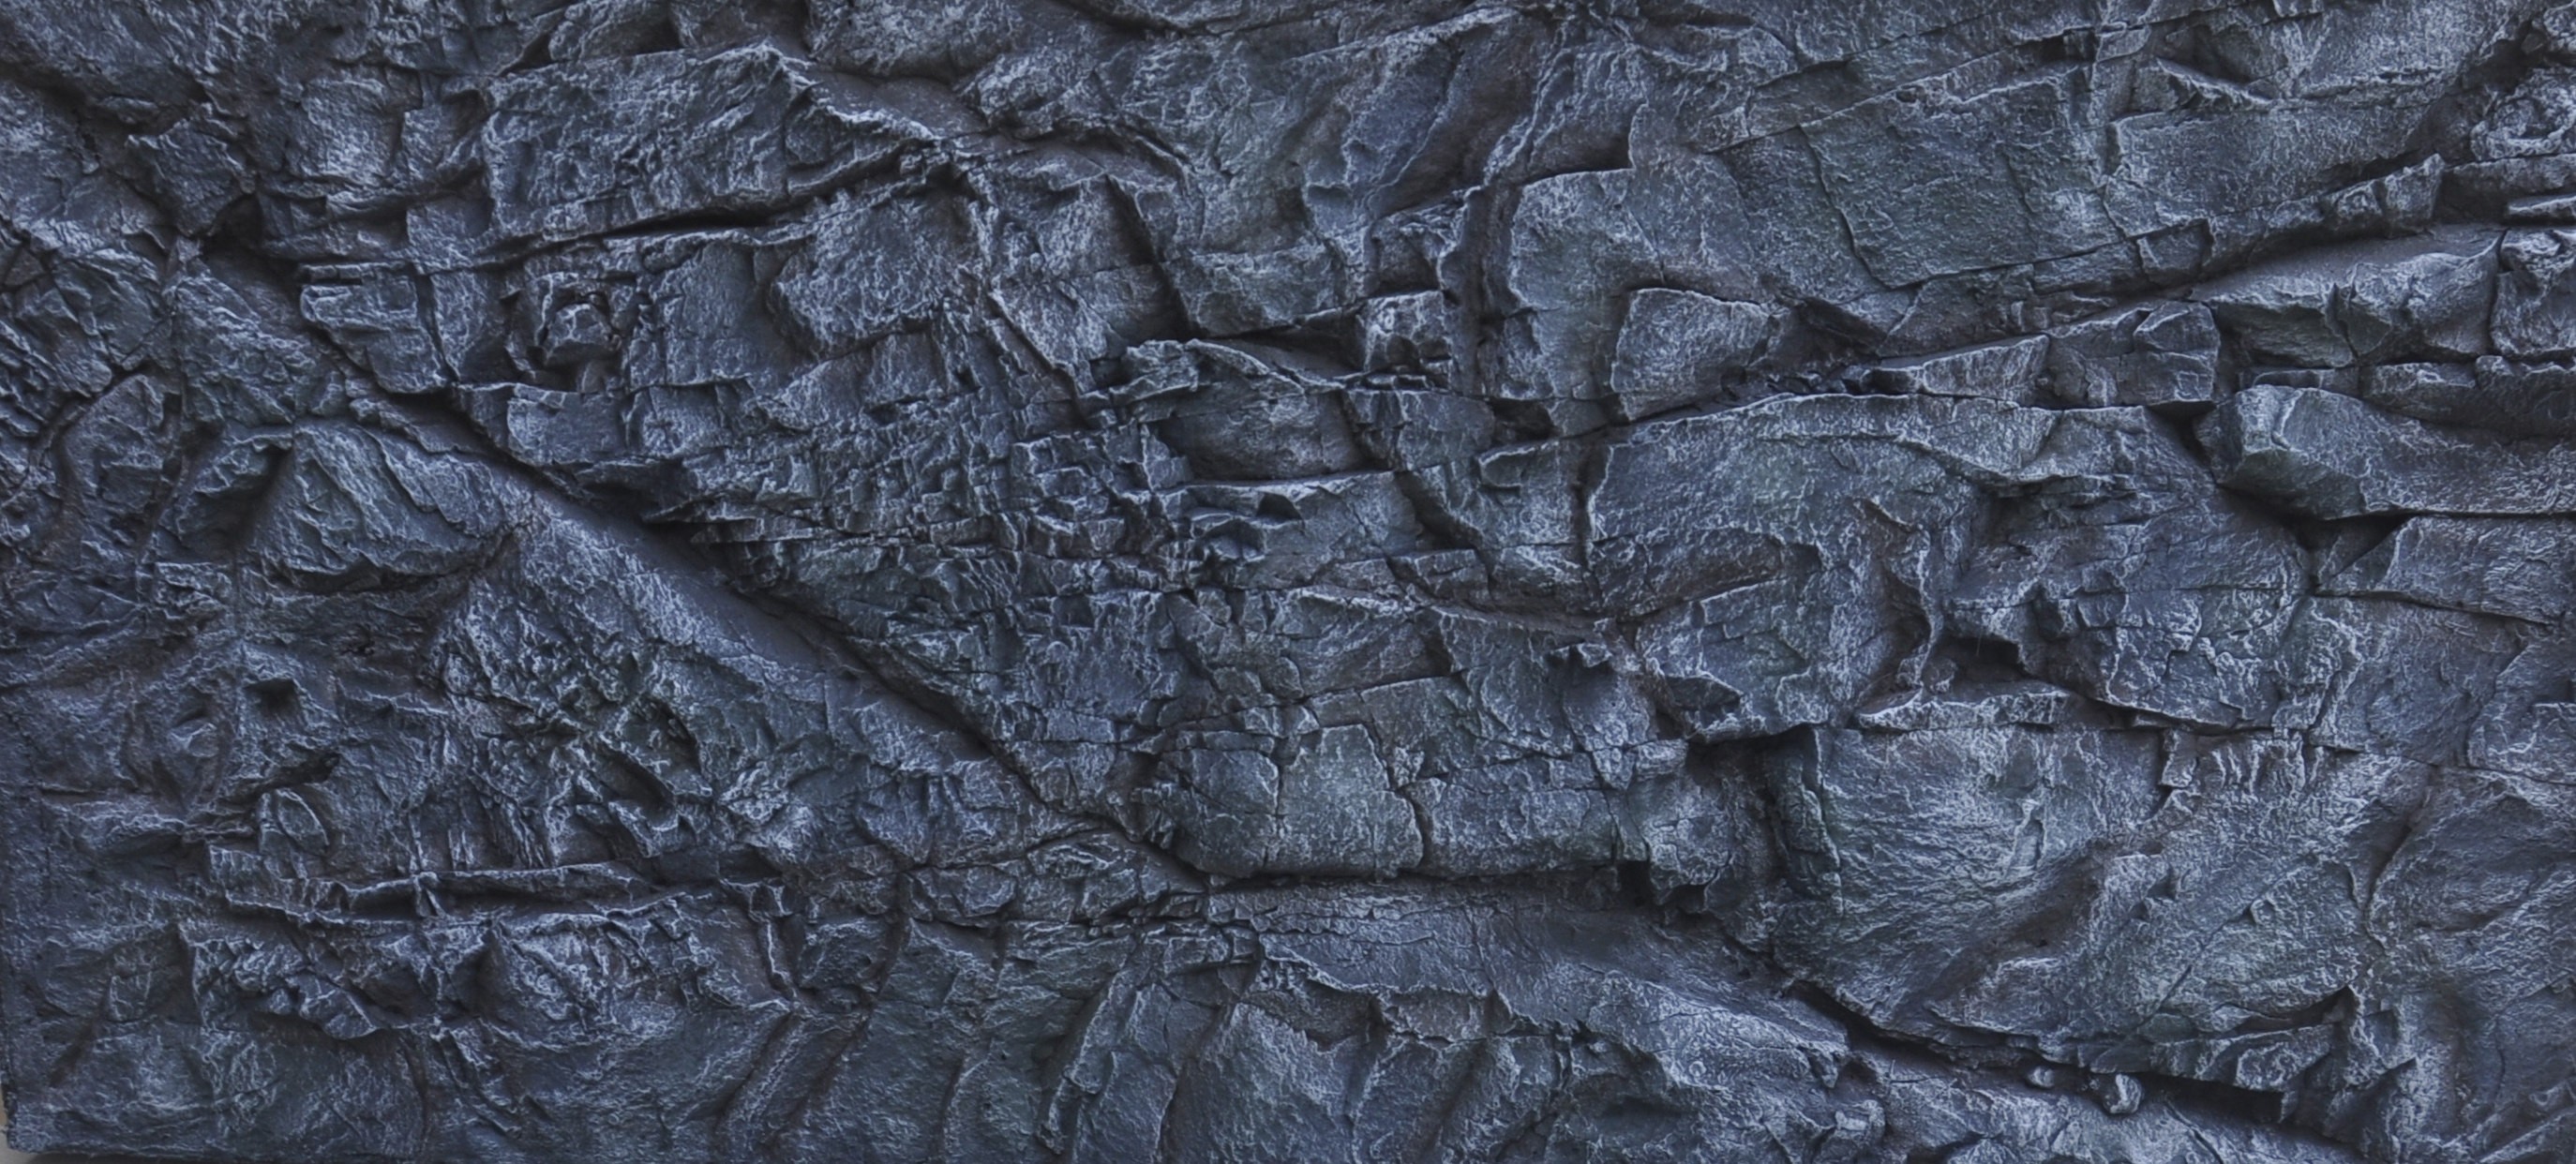 rock wall wallpaper,black,rock,geology,pattern,formation